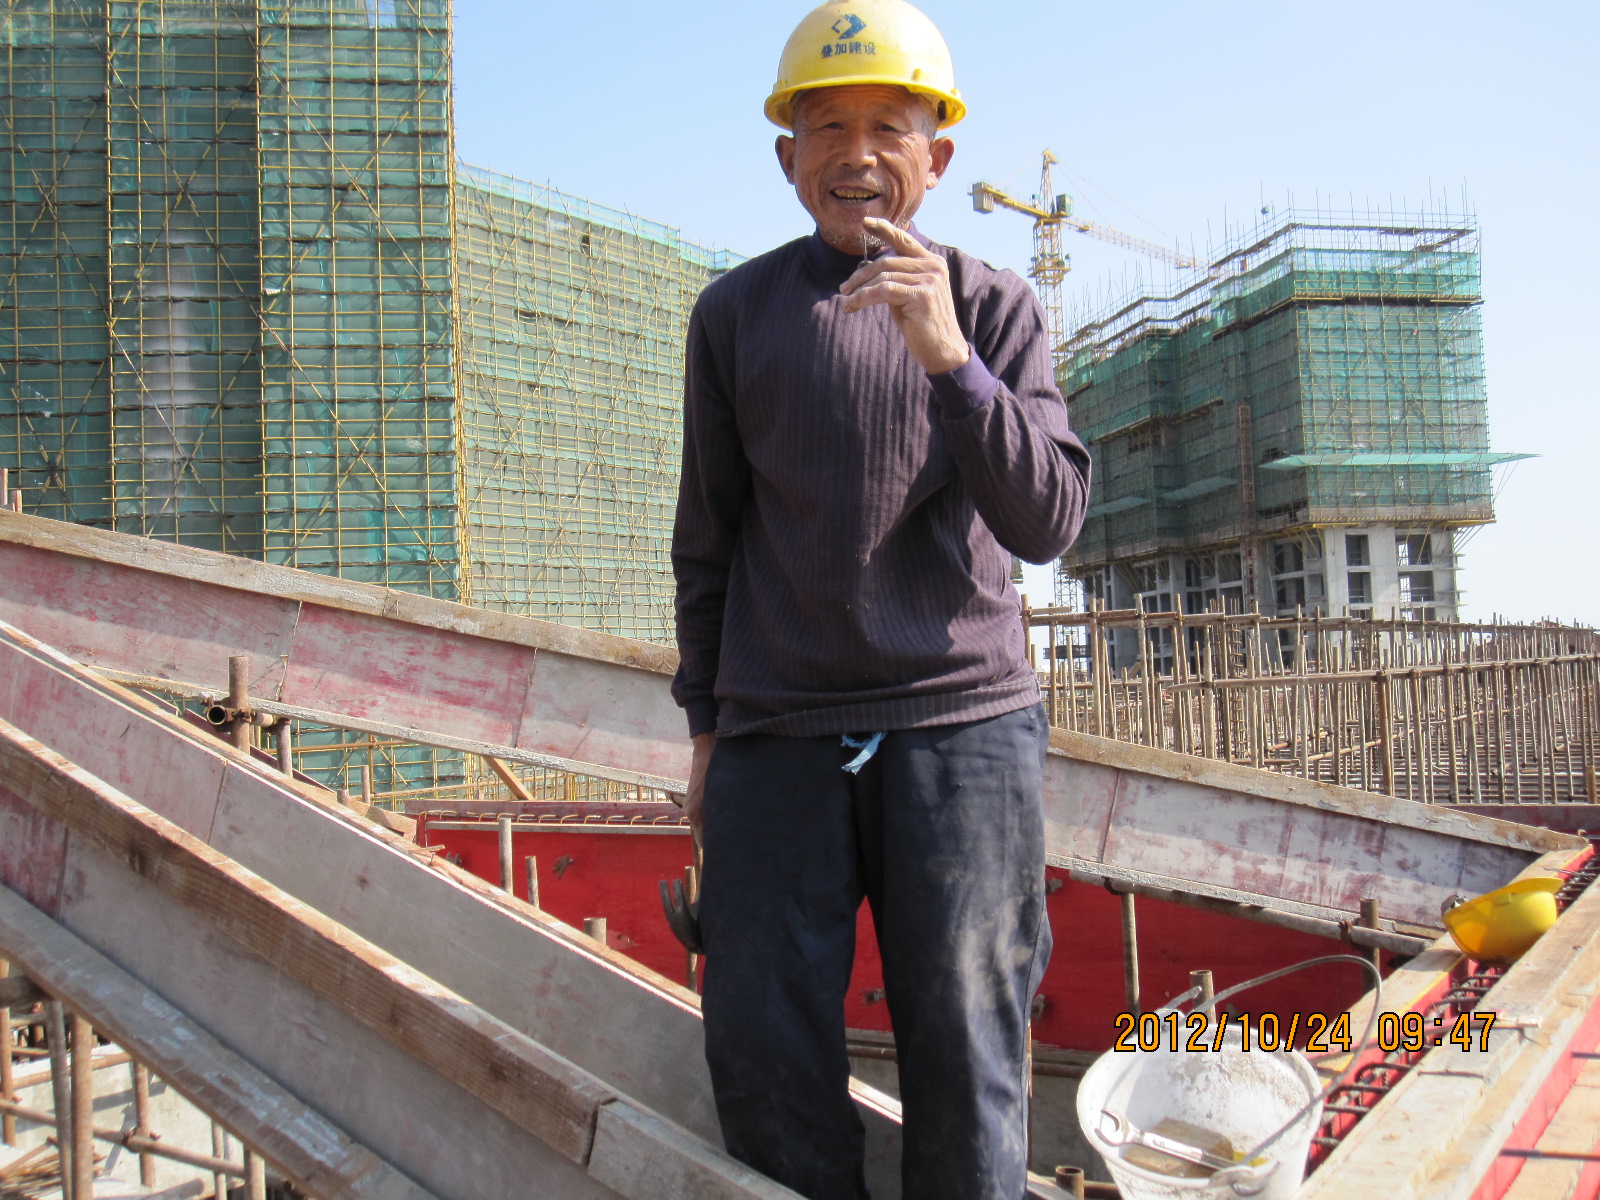 图片上是一位在江苏启动开发区工地工的老木工,万恶的制度,逼得